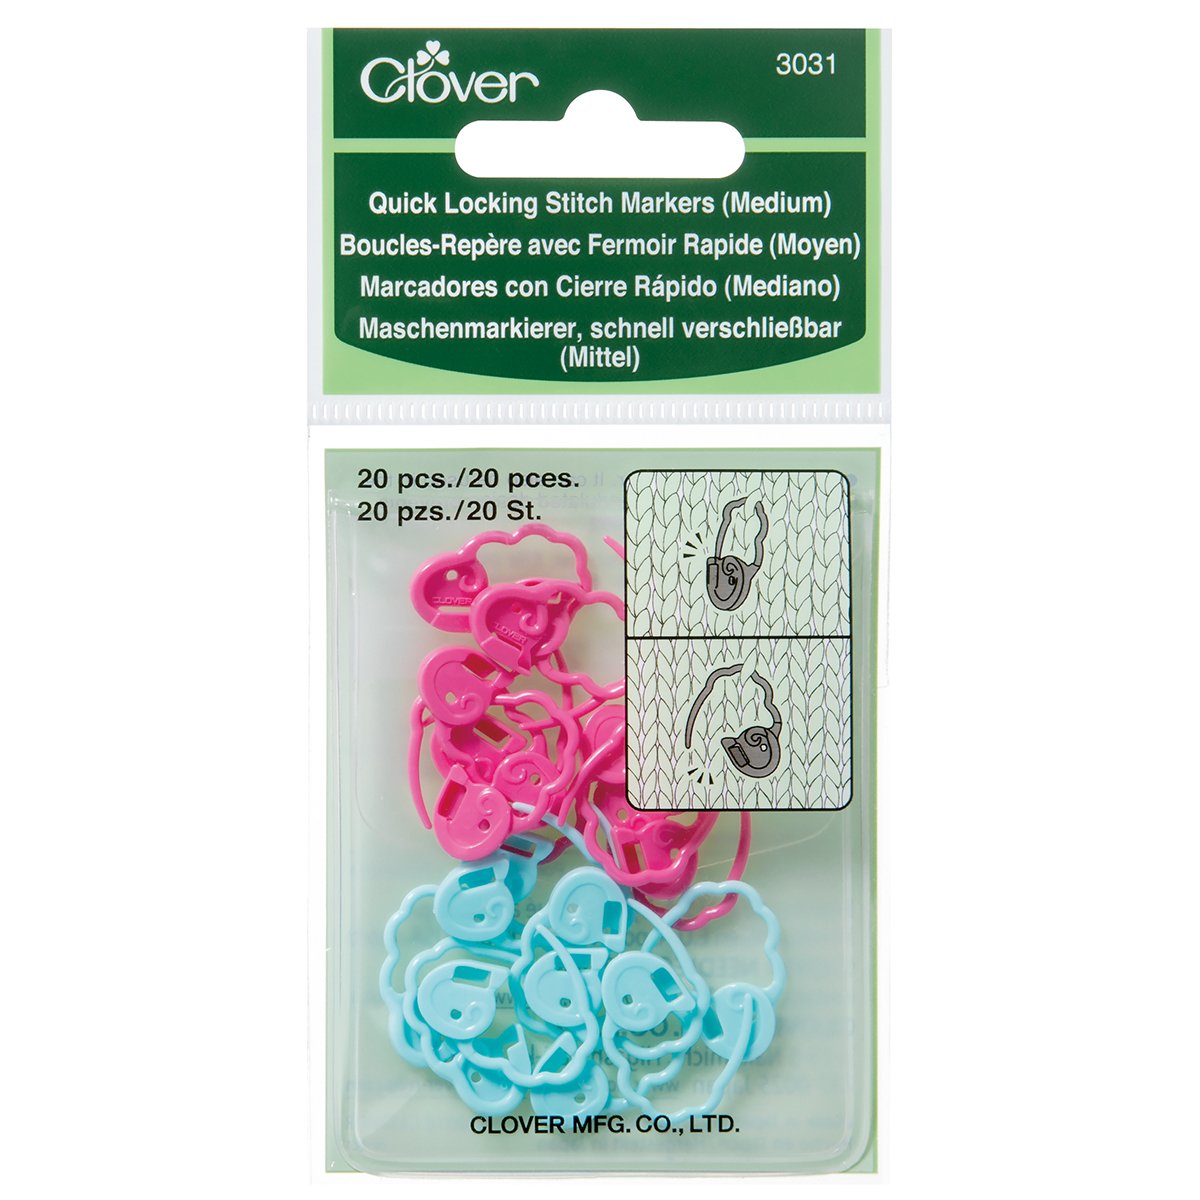 CLV - Quick Locking Stitch Markers - Medium